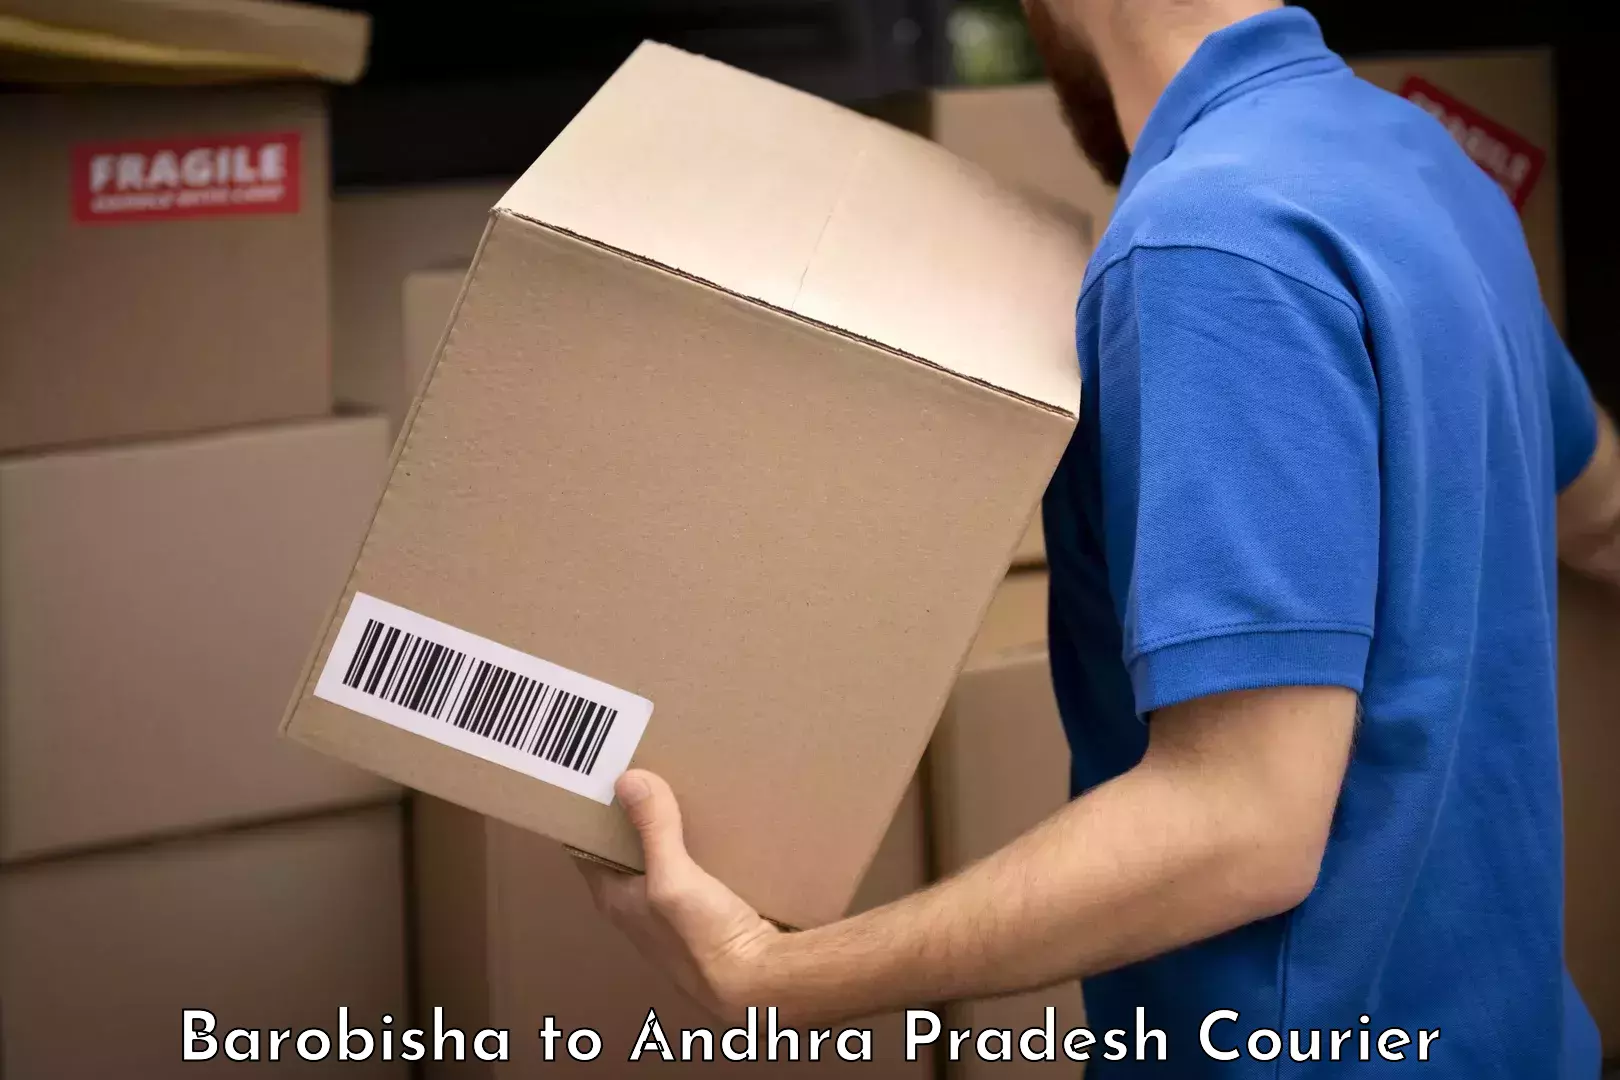 Baggage shipping experts Barobisha to Andhra Pradesh